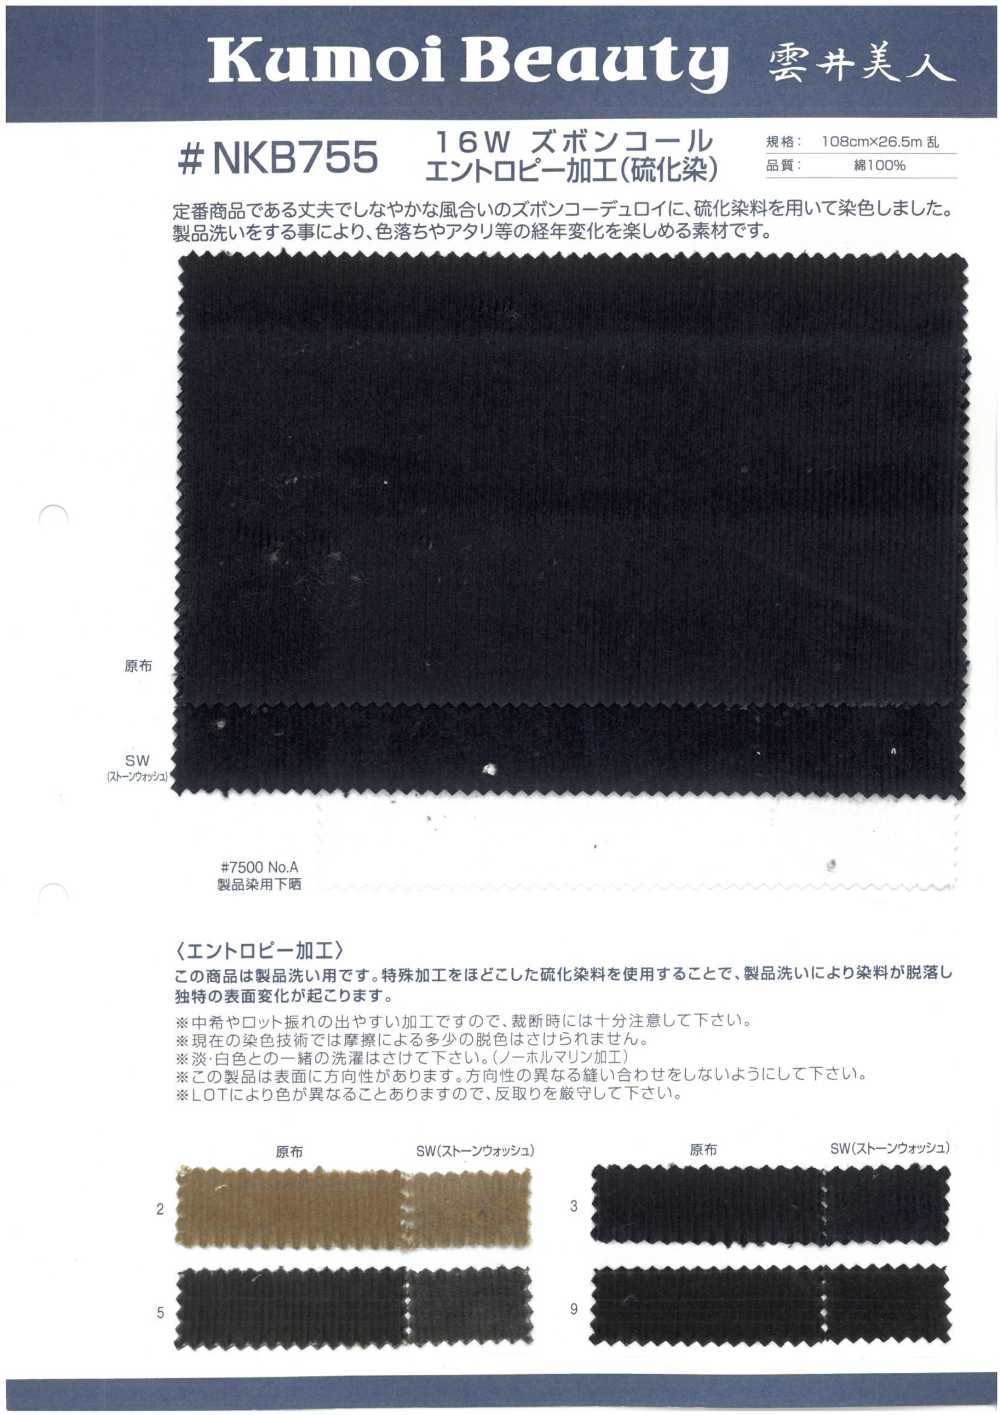 NKB755 Procesamiento De Entropía De Pana De Pantalones De 16 W (Teñido De Sulfuro)[Fabrica Textil] Kumoi Beauty (Pana De Terciopelo Chubu)